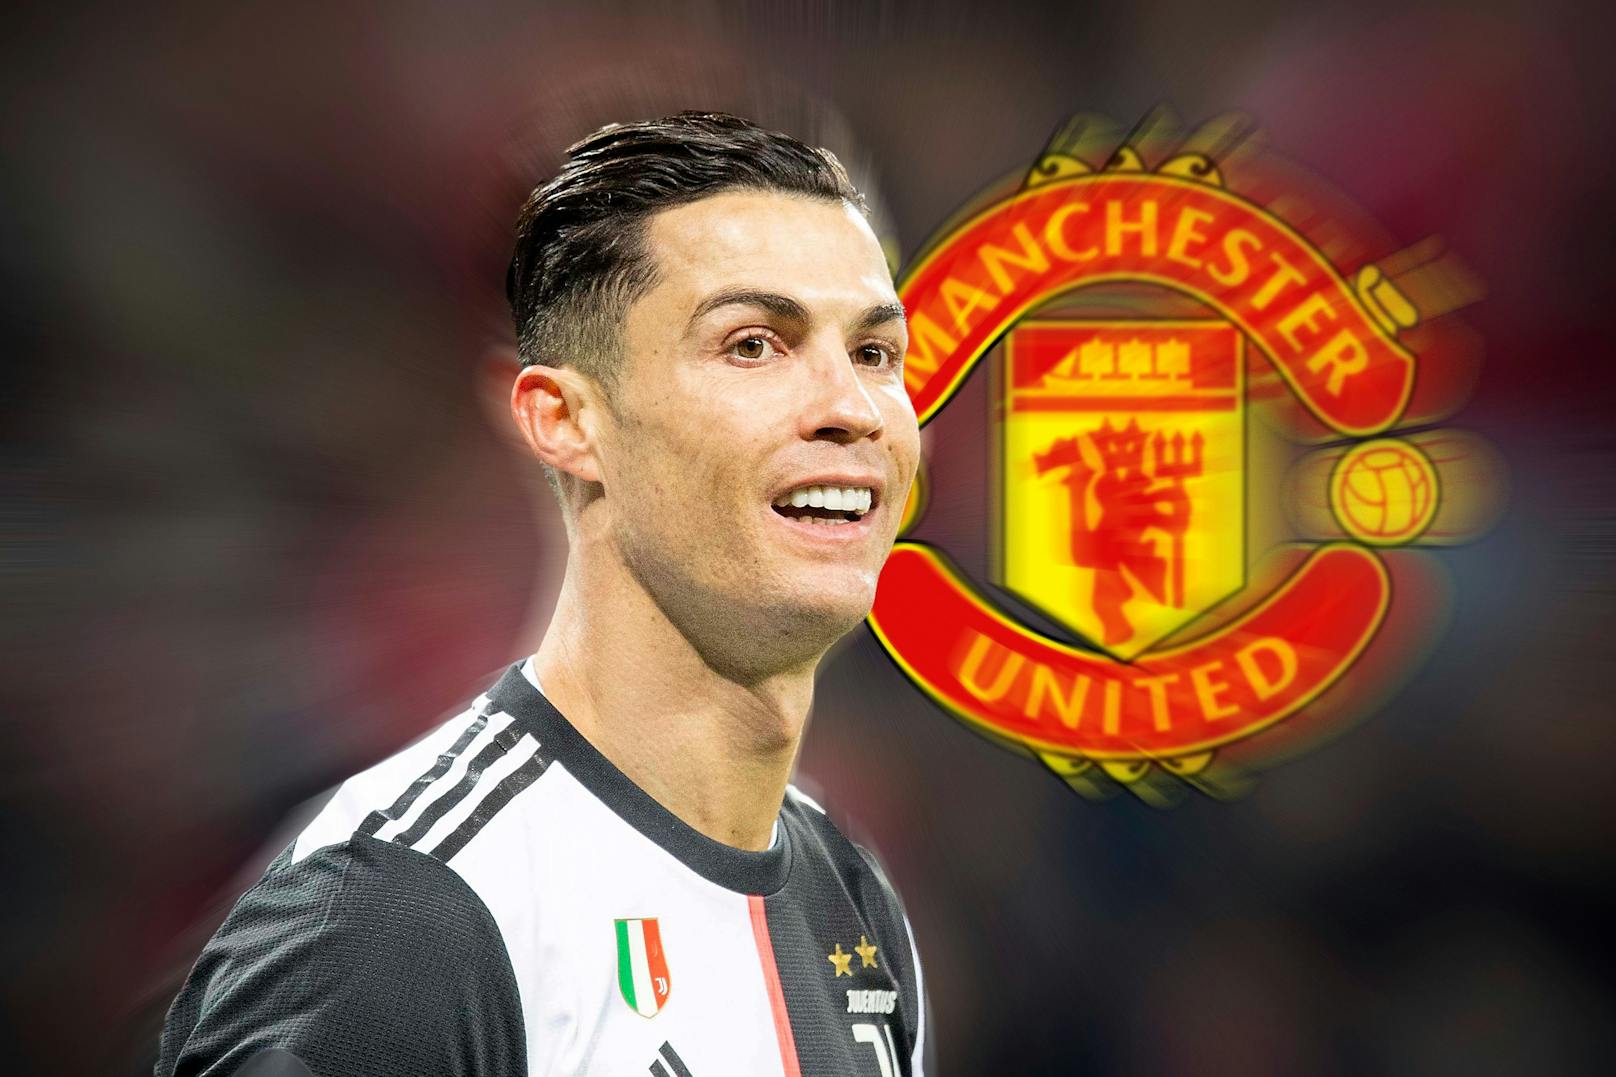 Cristiano Ronaldo kehrt zu Manchester United zurück, wir blicken auf seine bisherige Karriere zurück.